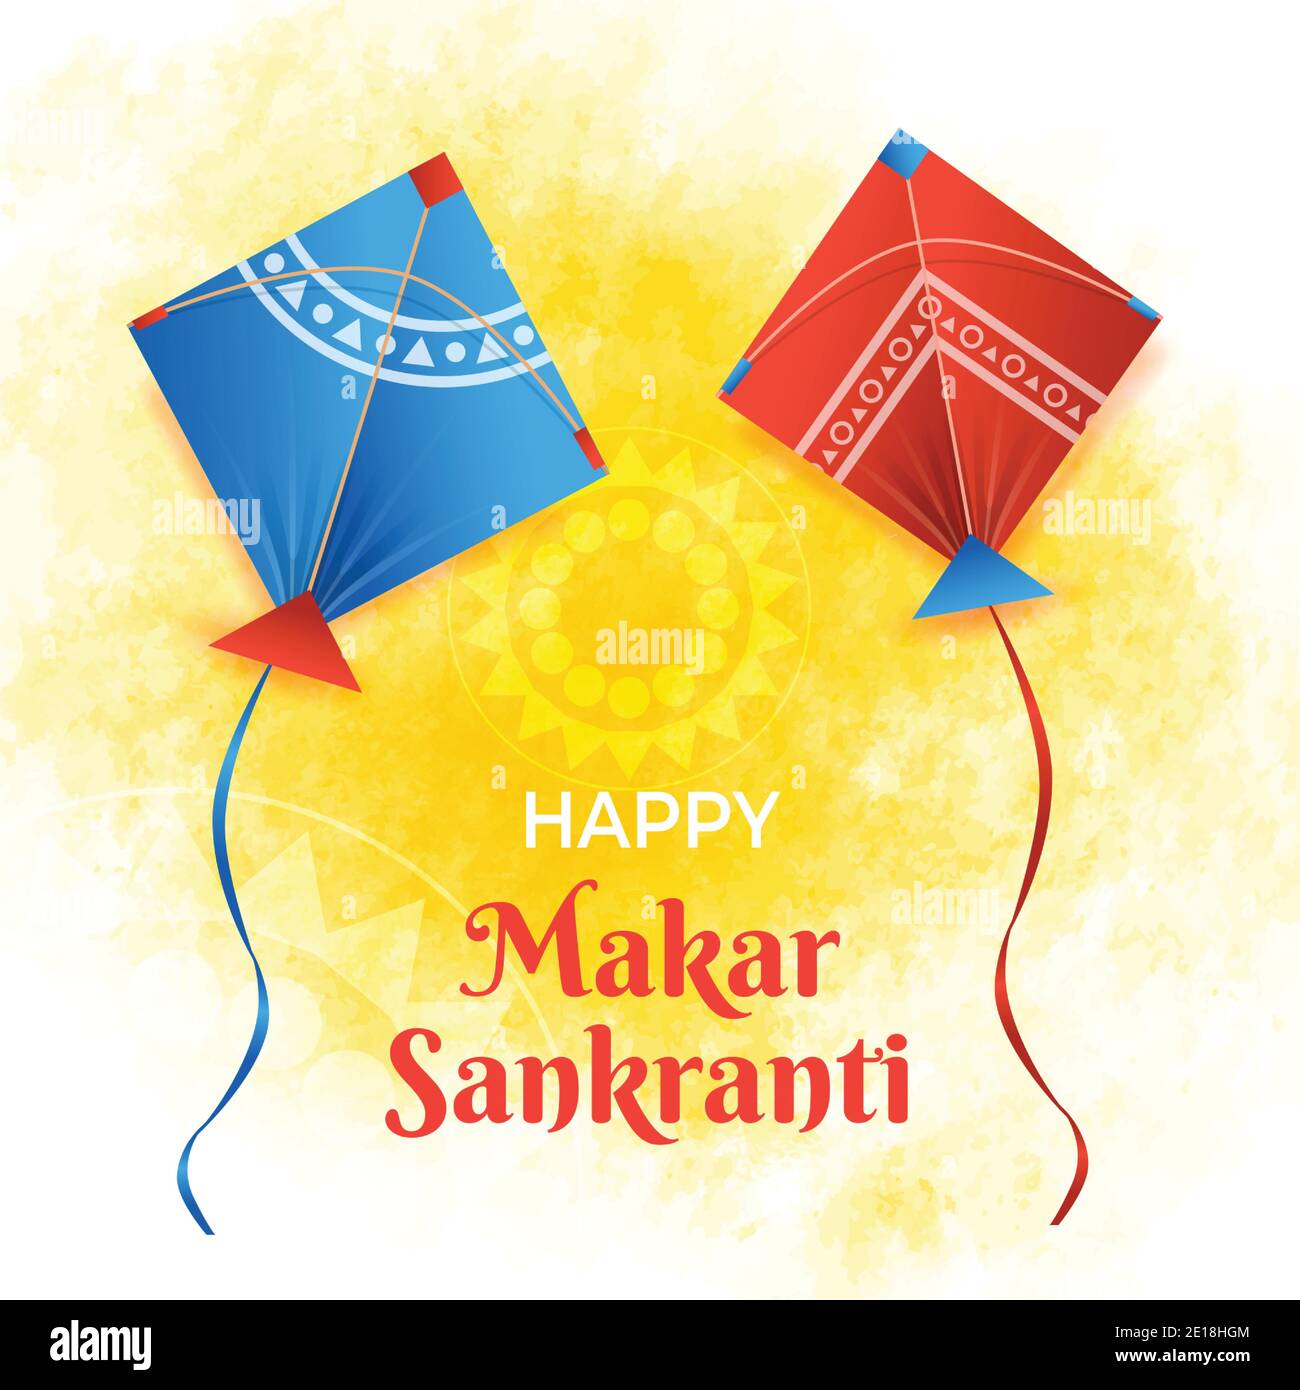 Happy Makar Sankranti | Makar Sankranti Wishes | Makar Sankranti 2021 |  Happy makar sankranti, Happy makar sankranti wallpaper, Sankranti wishes  images